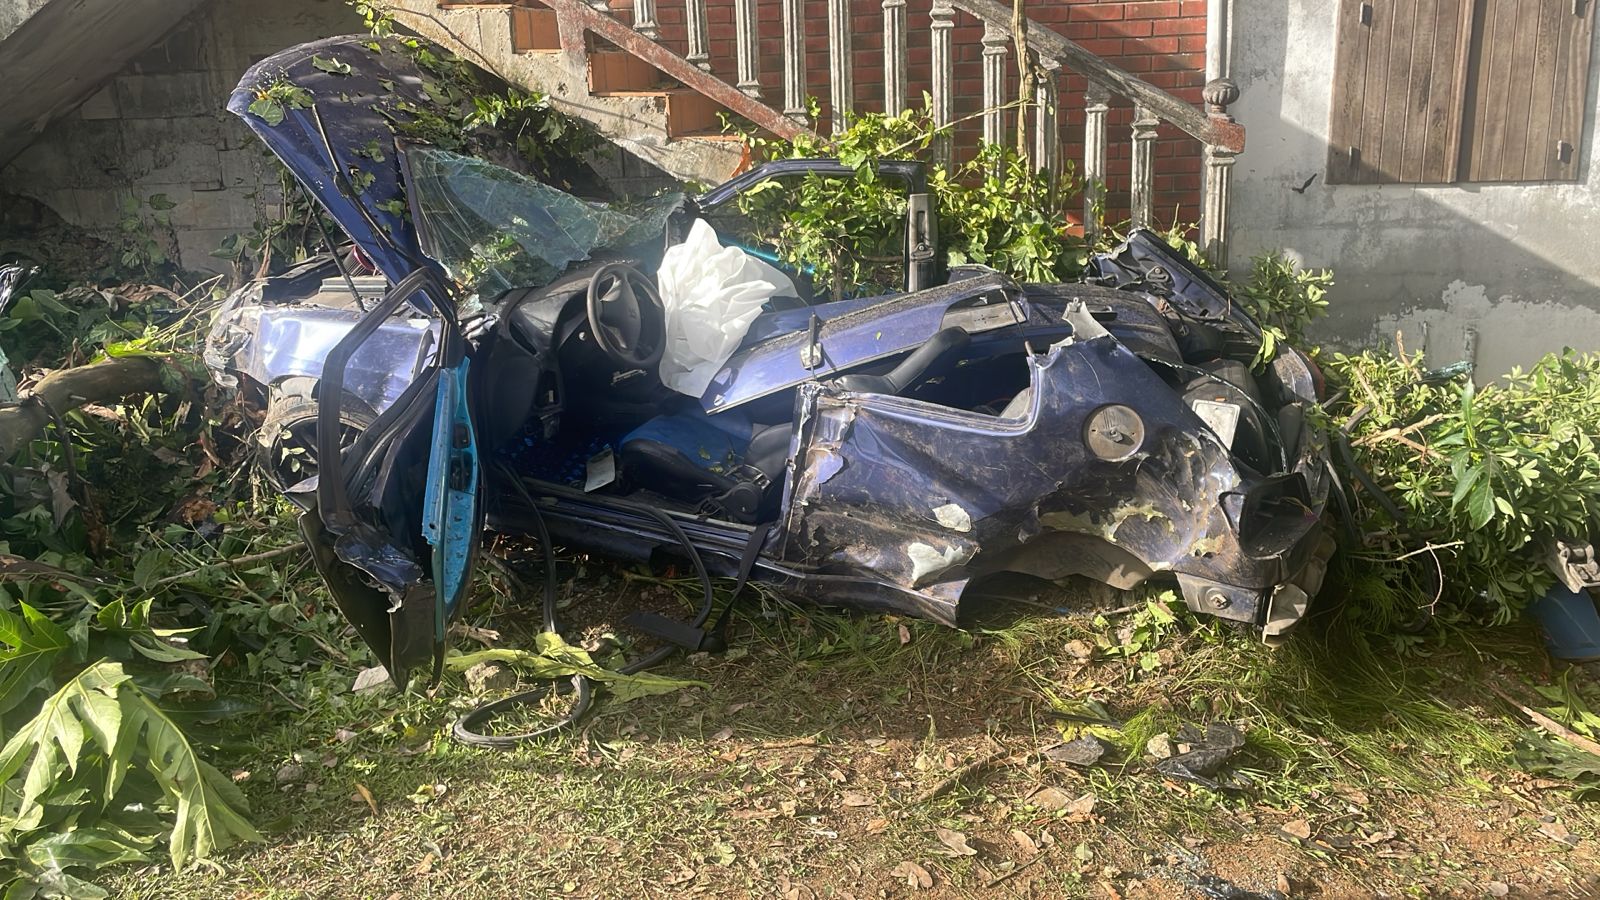     Accident spectaculaire à Petit-Bourg : un véhicule s’encastre sous l’escalier d’une maison

